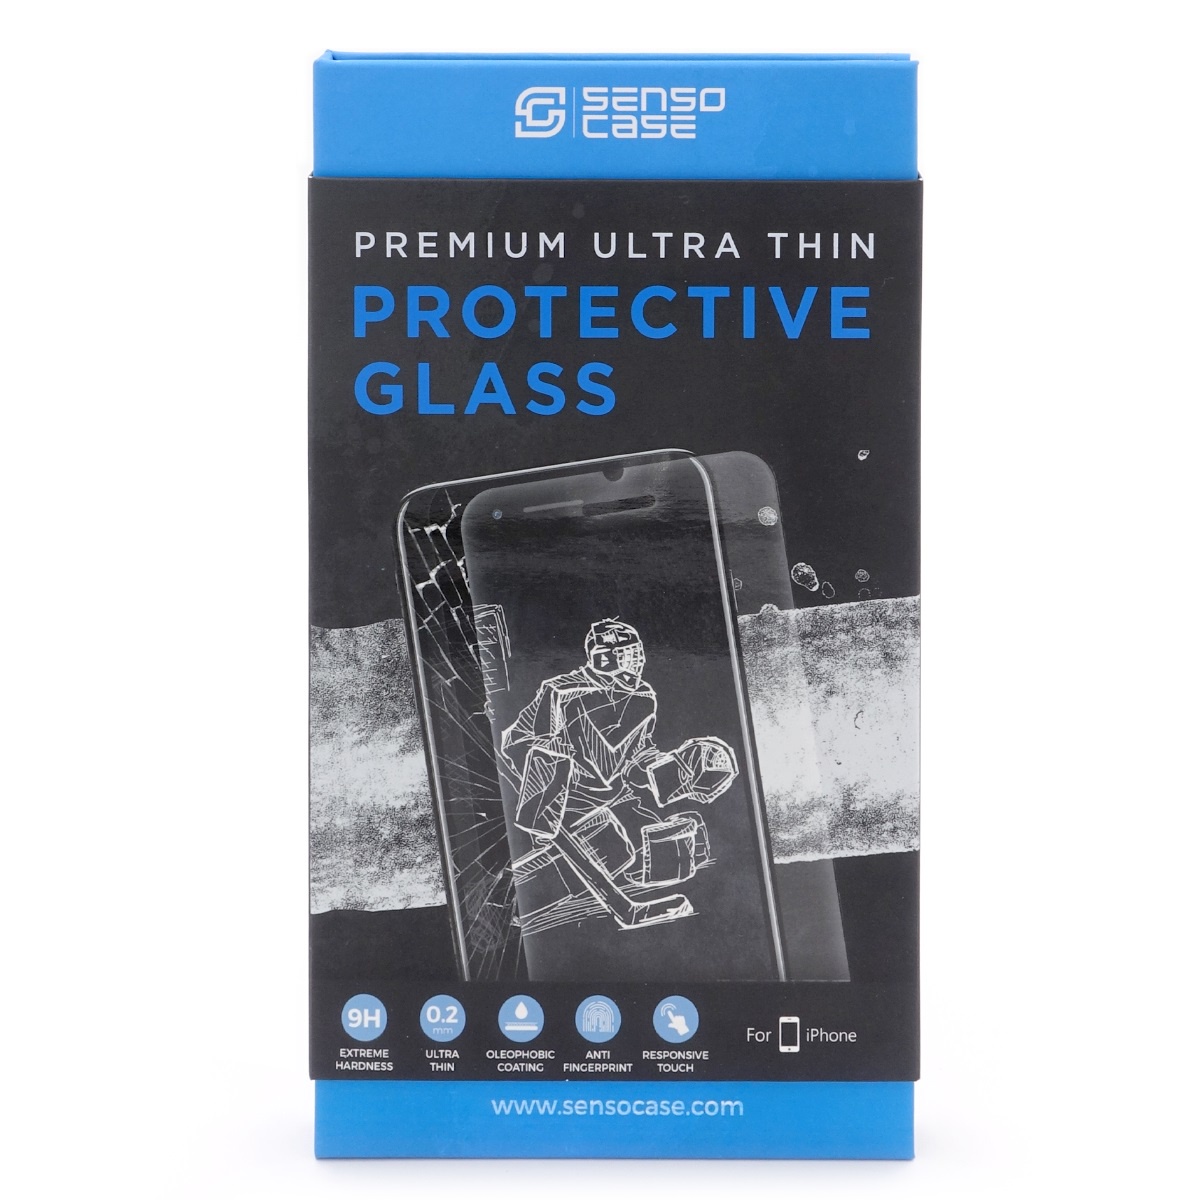 фото Защитное стекло SensoCase для iPhone 7 Protective Glass 0.2 mm 2,5D 9H+, ультратонкое, кристально прозрачное, PG-IP7